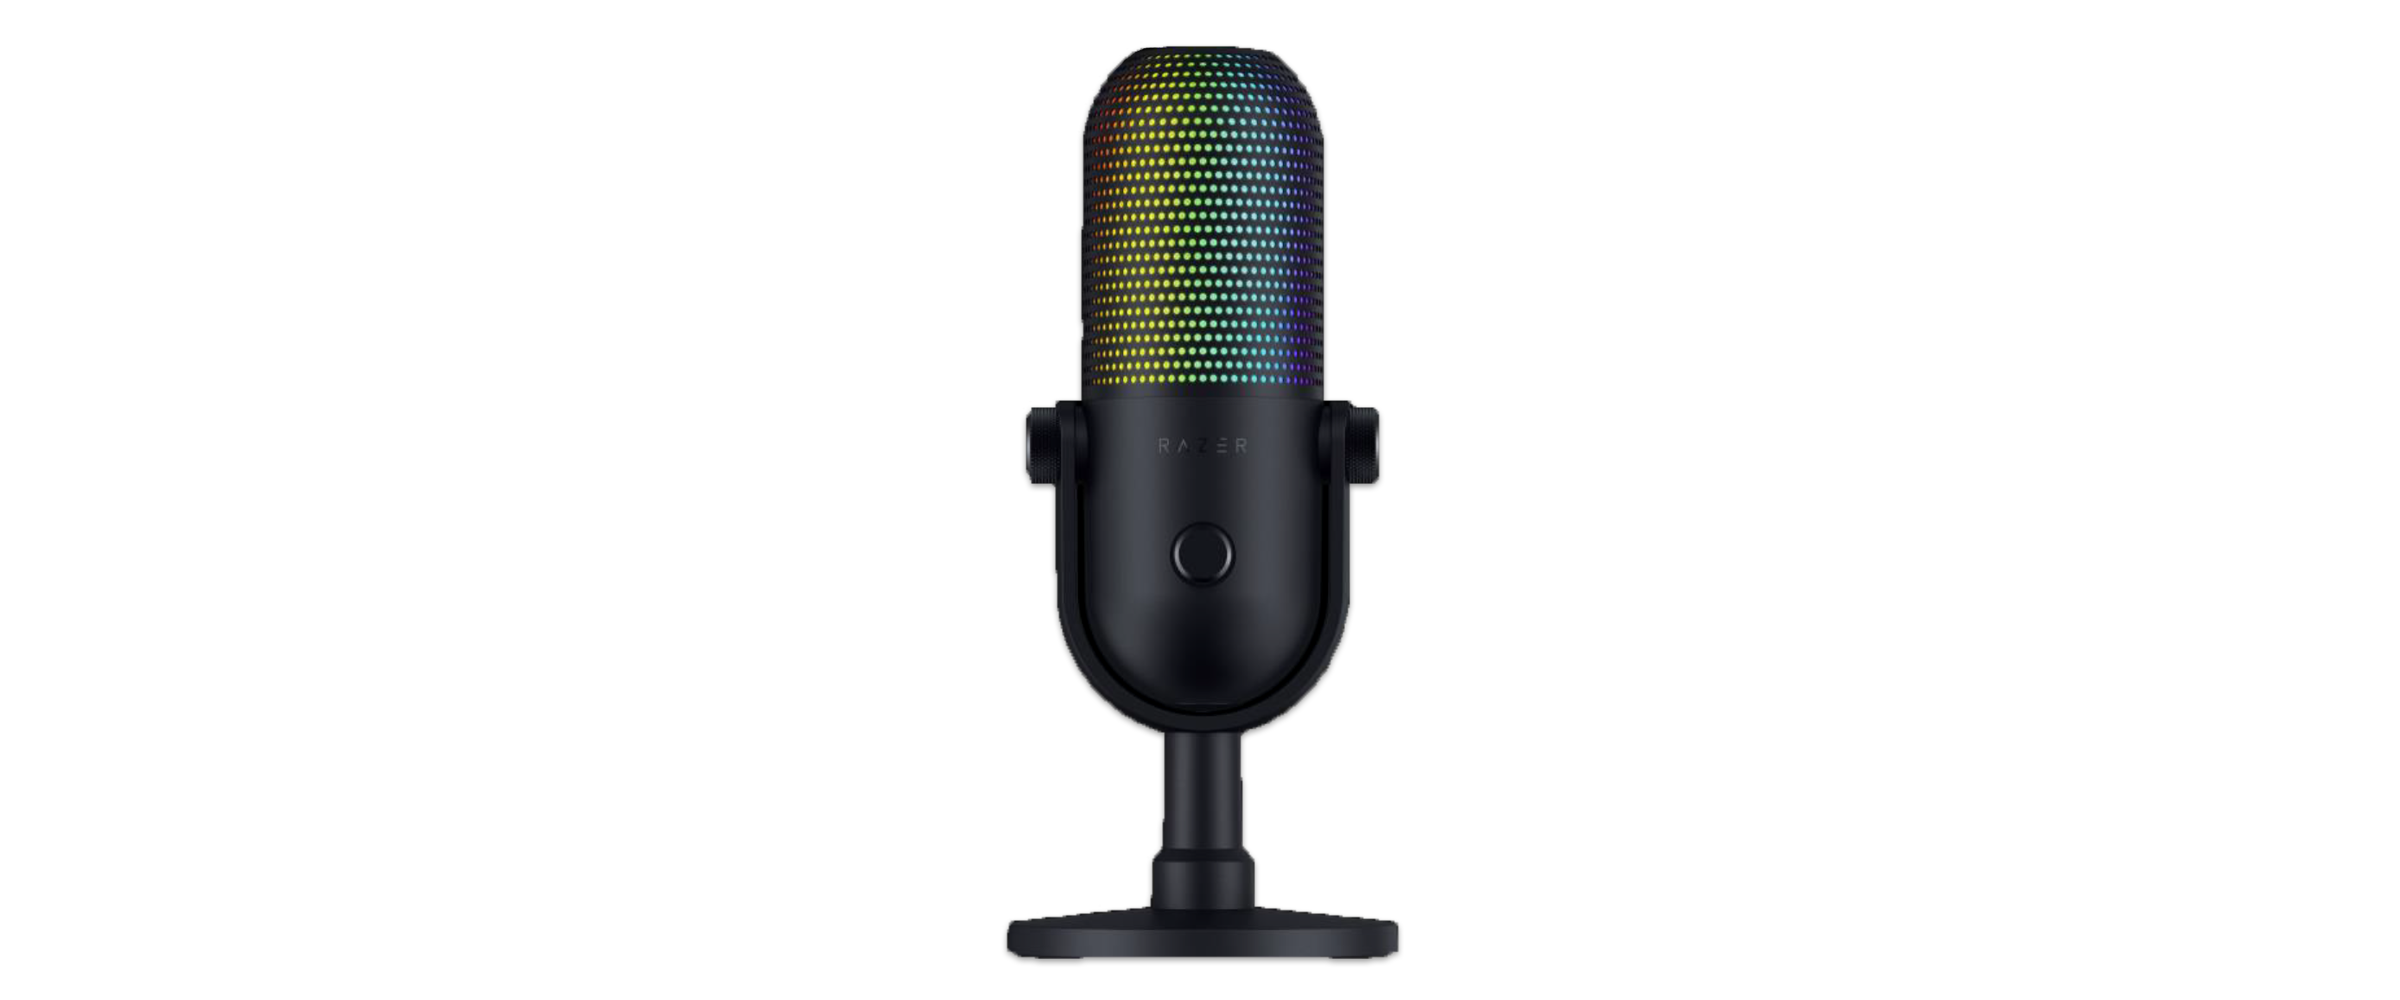 Das Streaming-Mikrofon Razer Seiren V3 Chroma vor weißem Hintergrund. Das Mikrofon selbst ist schwarz, die Formen eher abgerundet und es kann bunt beleuchtet werden.